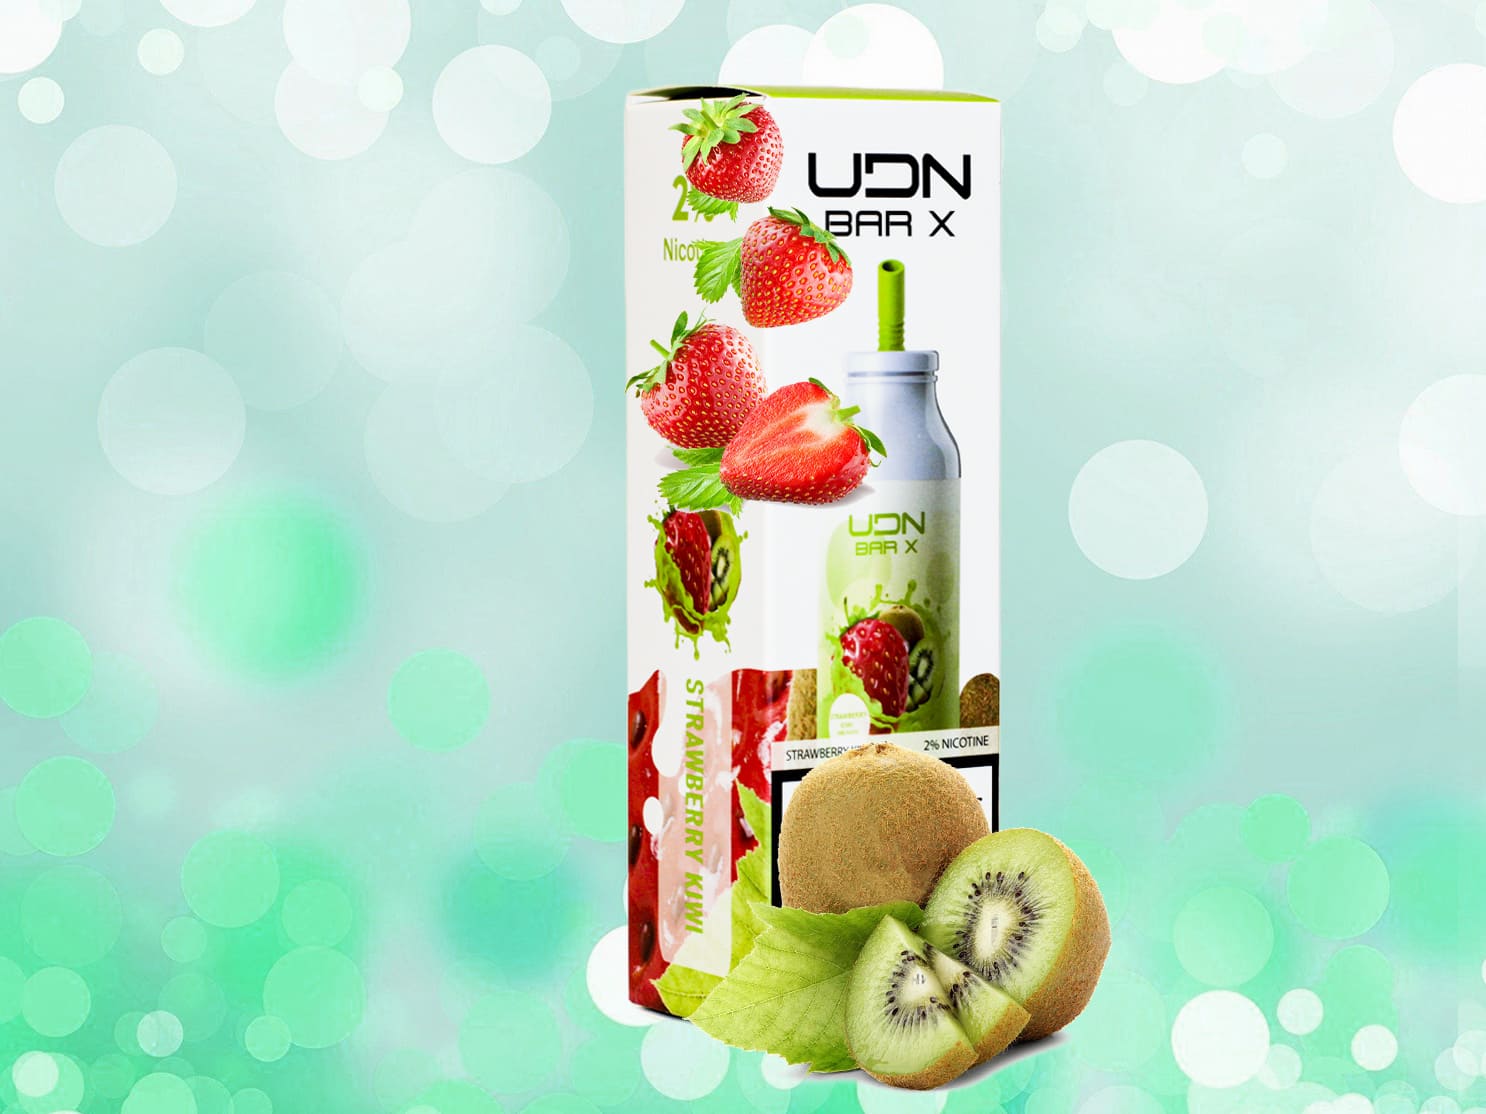 UDN BAR X 7000 / Strawberry kiwi